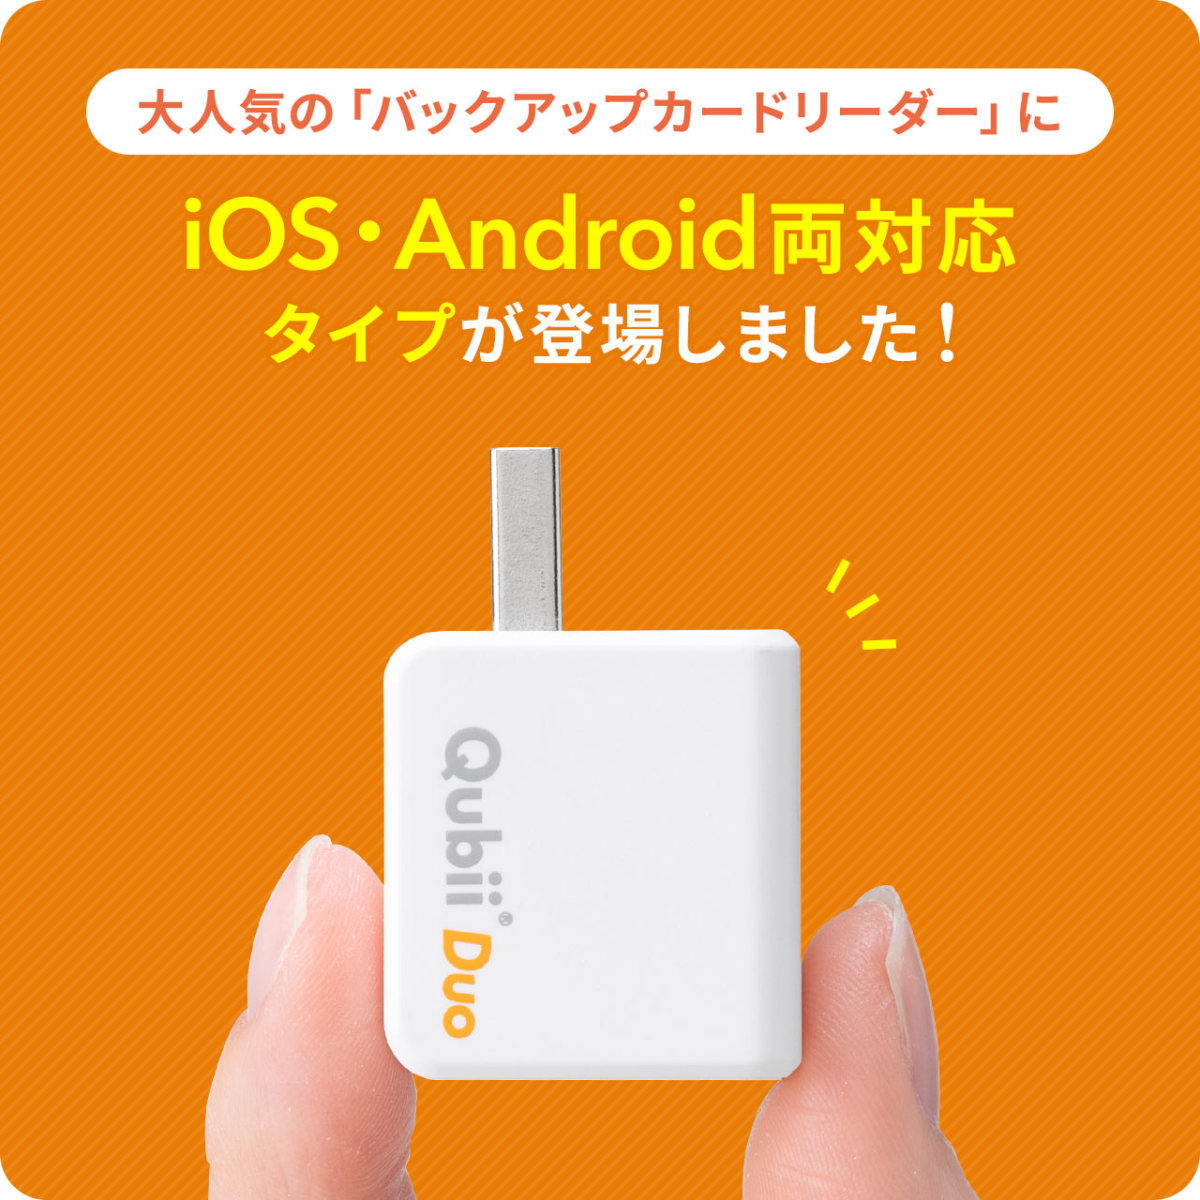 iPhone バックアップ 自動 Qubii Duo Android カードリーダー microSDカード付属 iPad iOS スマホ 充電 簡単接続 512GB TS512GUSD300S-A セット 402-ADRIP013512